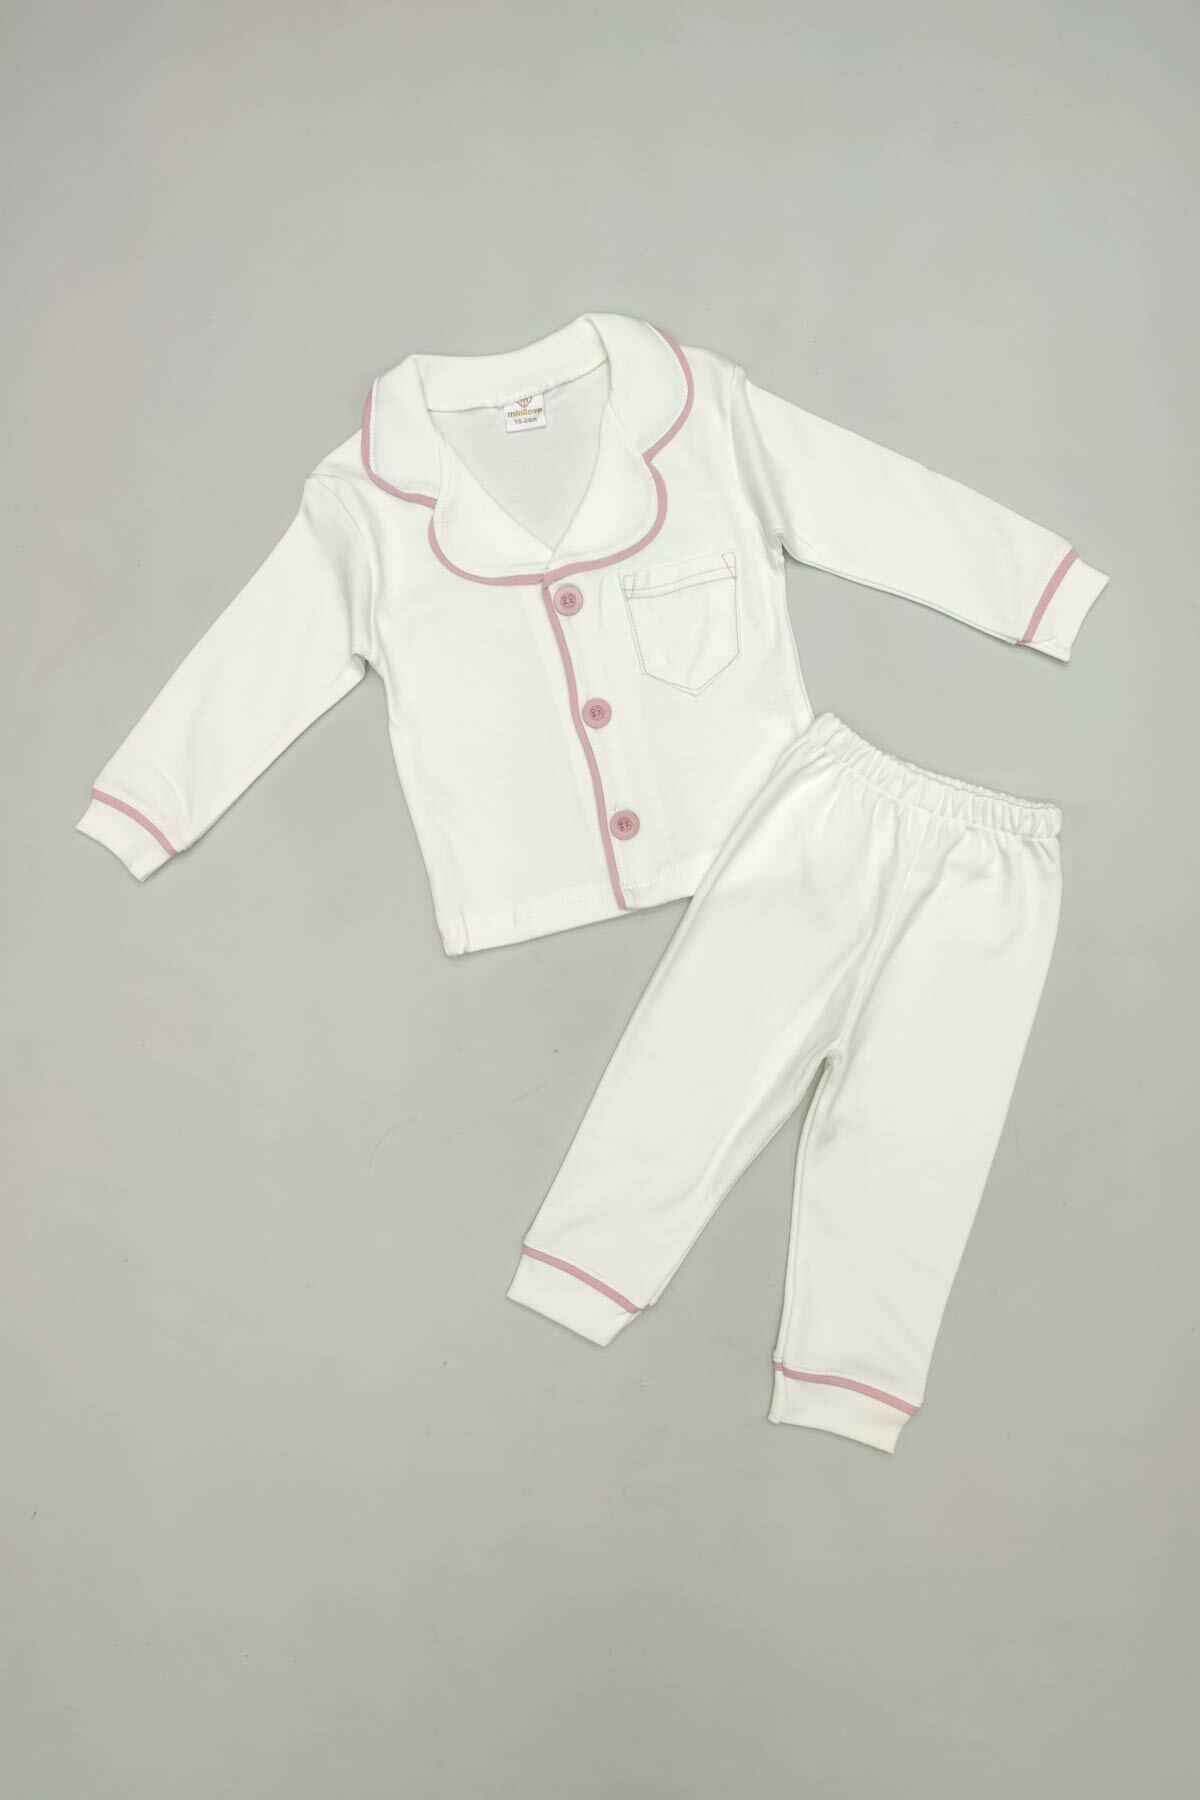 Peki Bebek 5 Al 4 Öde Yenidogan Kiz Erkek Yumusak Pamuklu Pijama Takimi Ekru Renkli Biye Hediyelik 15341